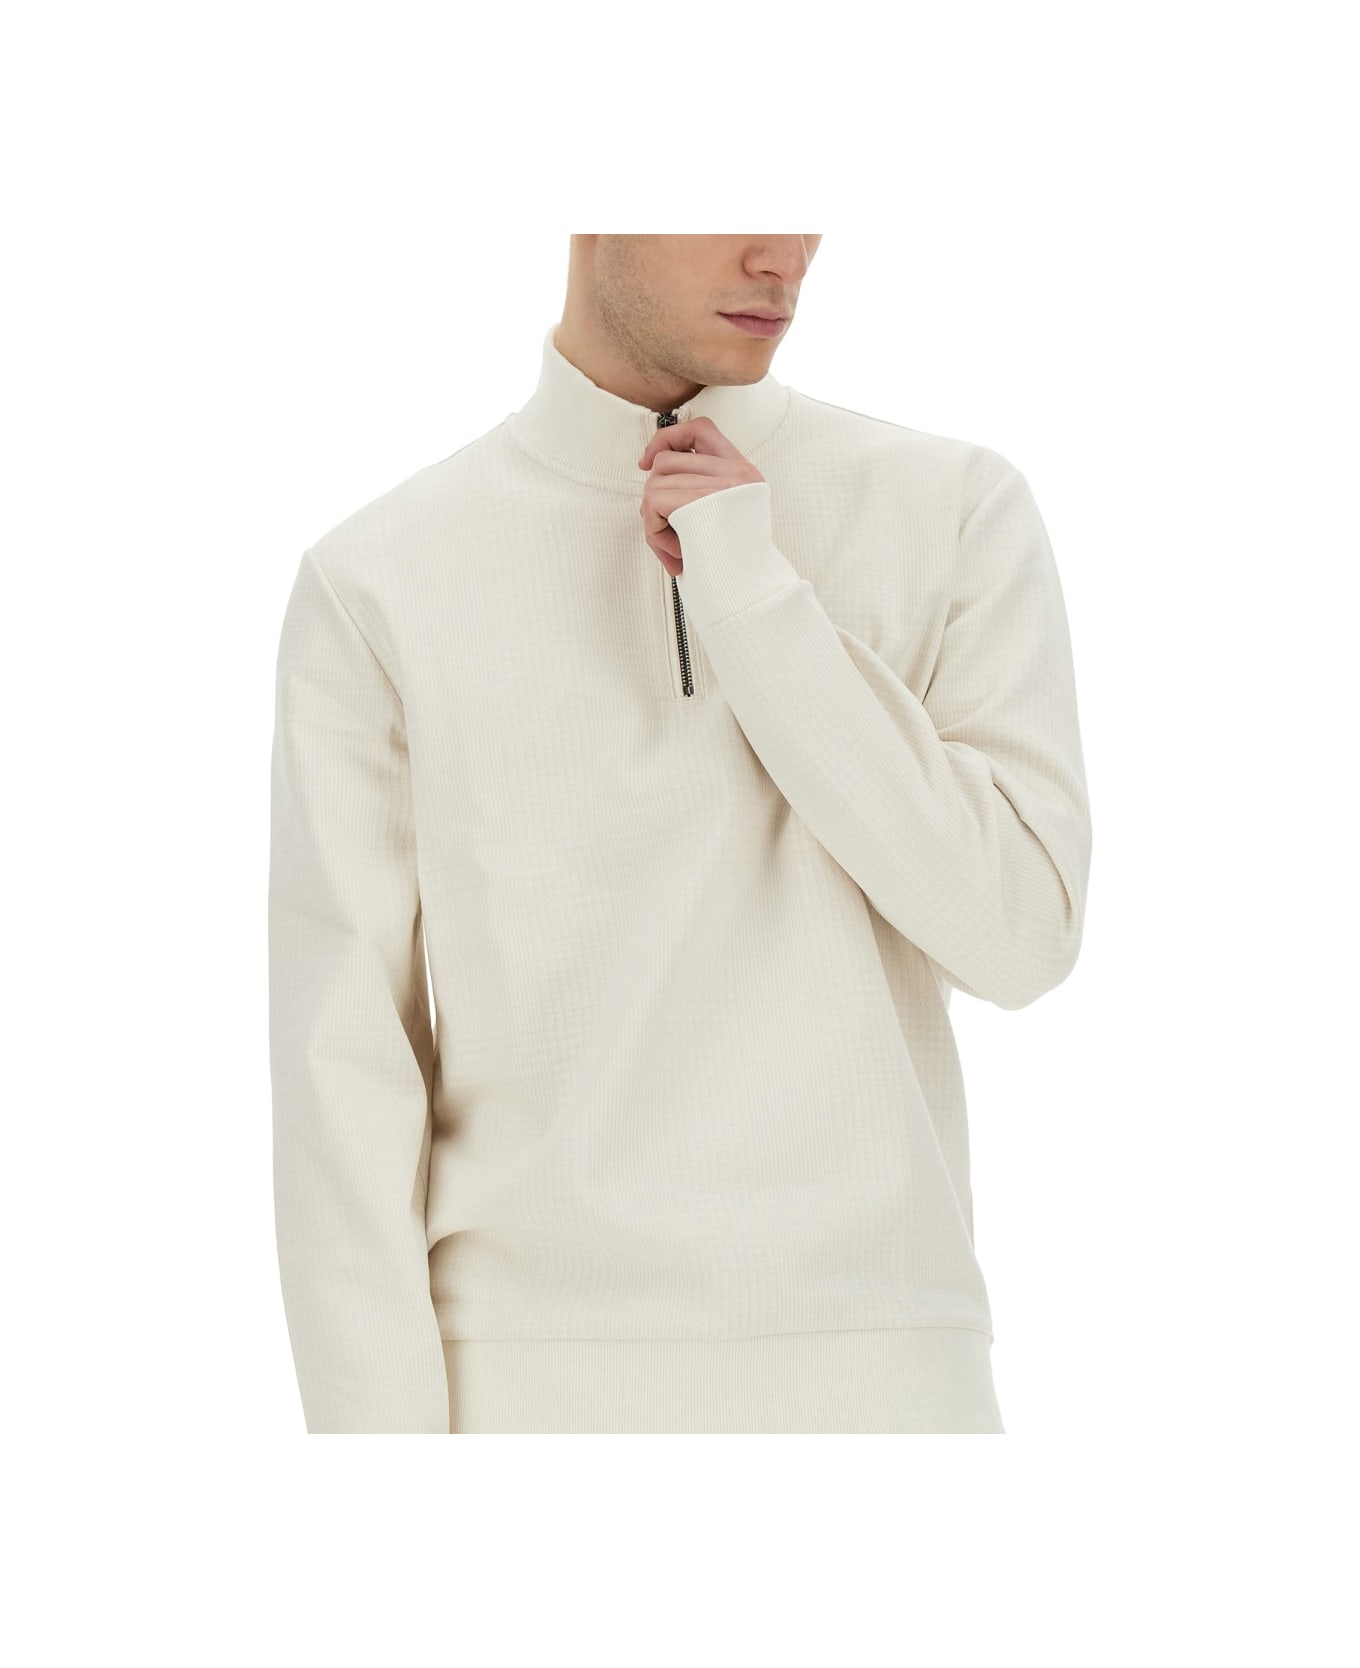 Hugo Boss Sweatshirt With Collar And Zipper - WHITE フリース